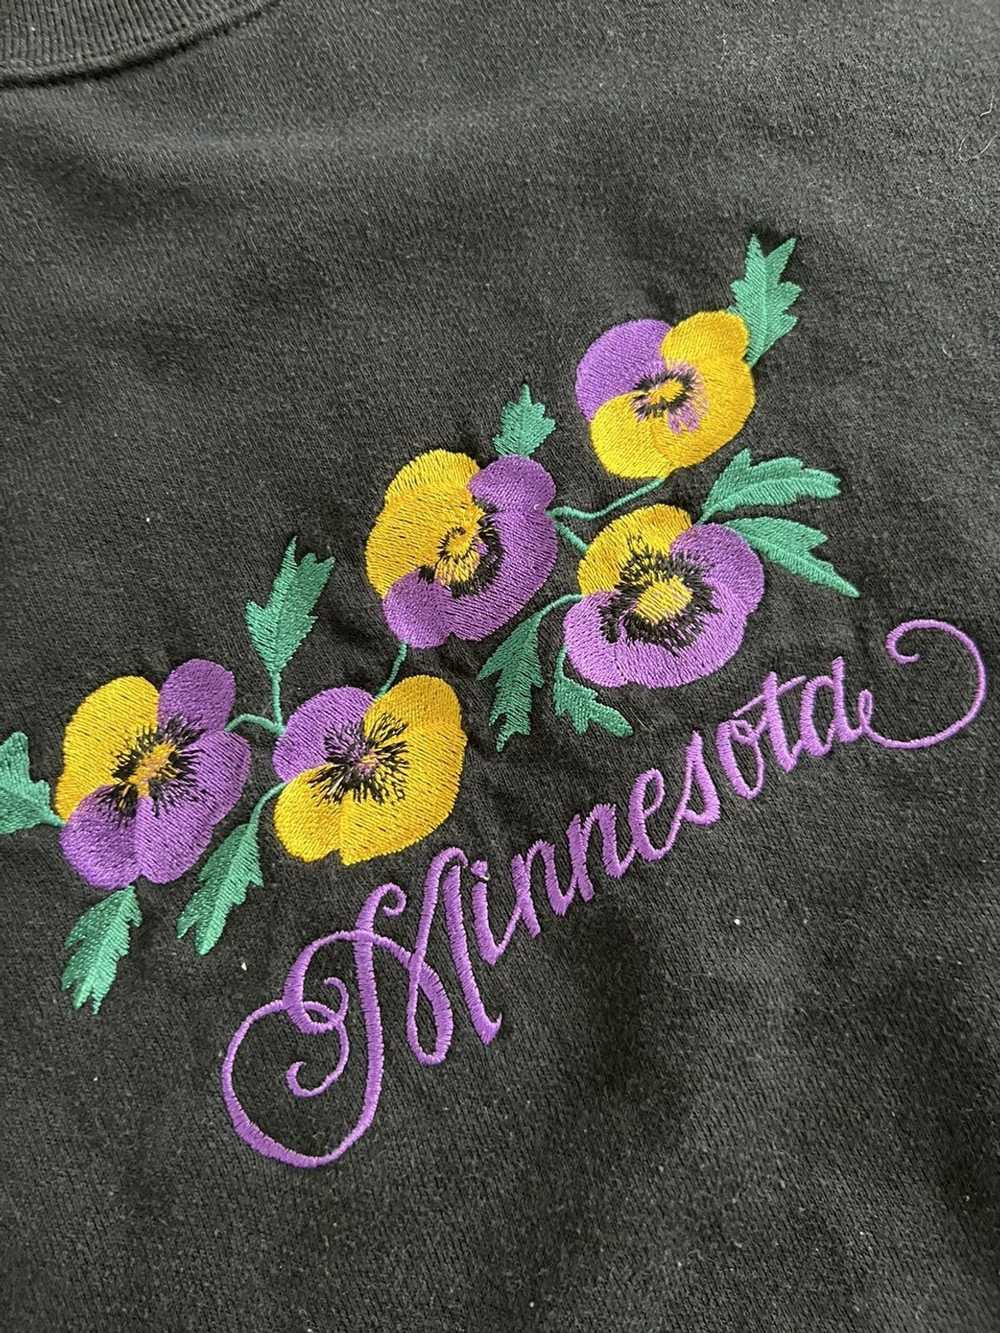 Vintage Vintage Minnesota Sweatshirt - image 2